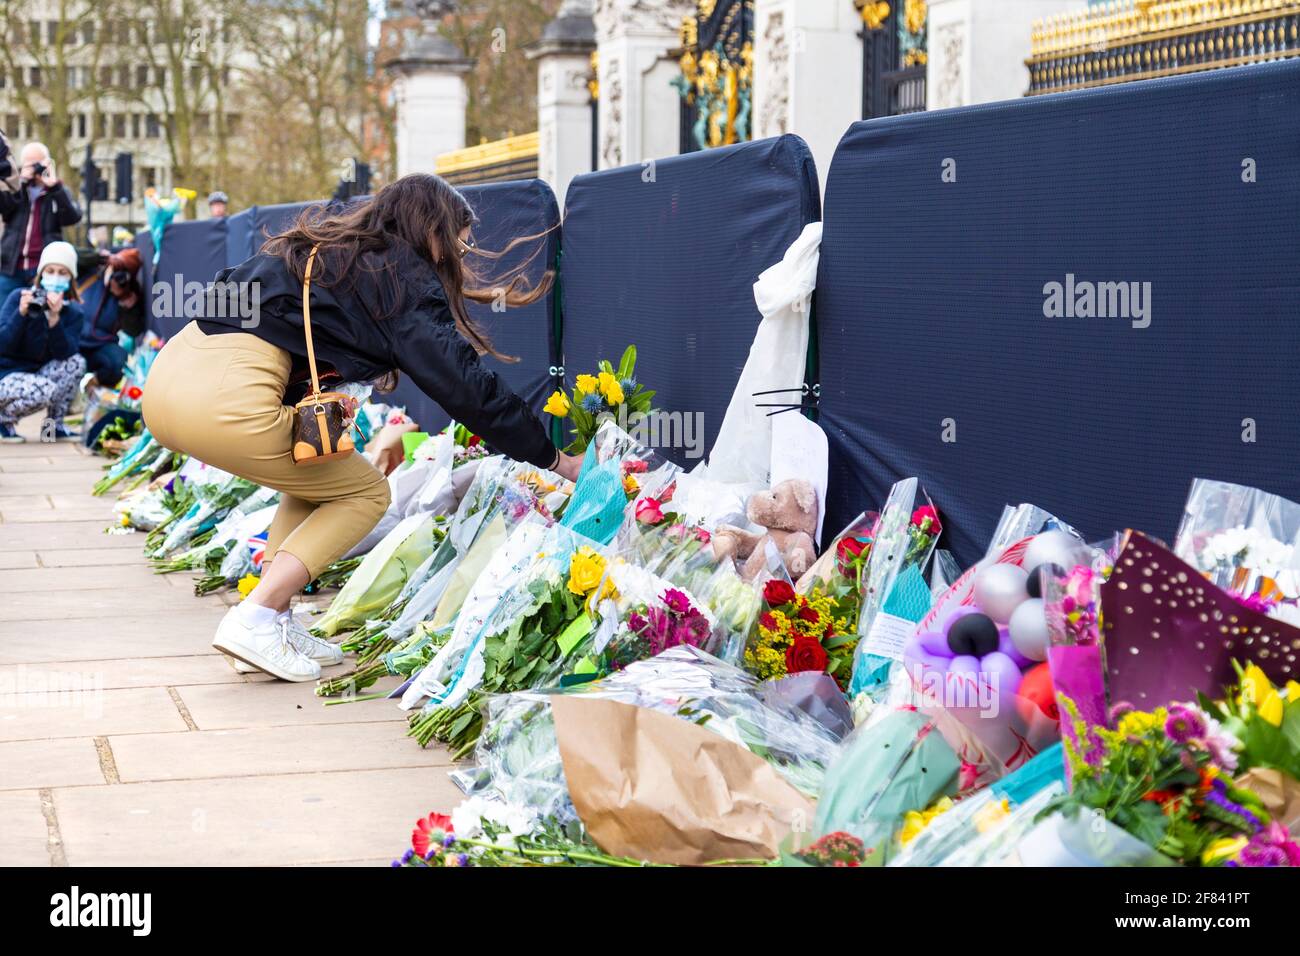 11 aprile 2021, Londra, Regno Unito - persone che posano fiori come tributo al principe Filippo, duca di Edimburgo fuori da Buckingham Palace dopo la sua morte il 9 aprile Foto Stock